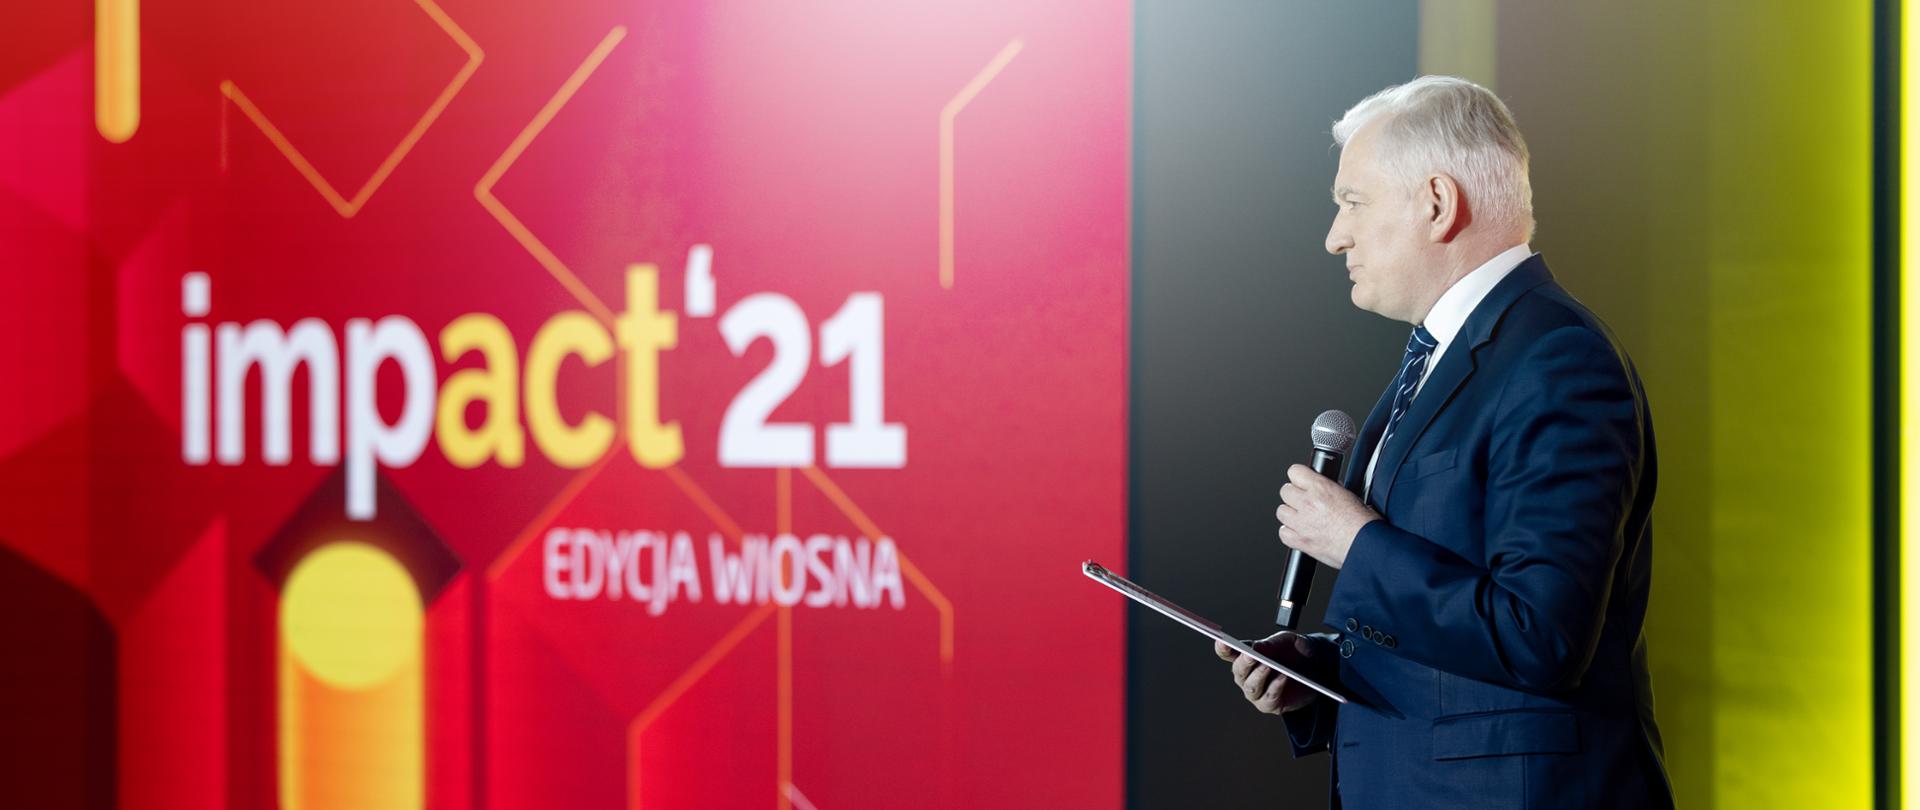 Wicepremier Jarosław Gowin podczas konferencji Impact'21 w Warszawie